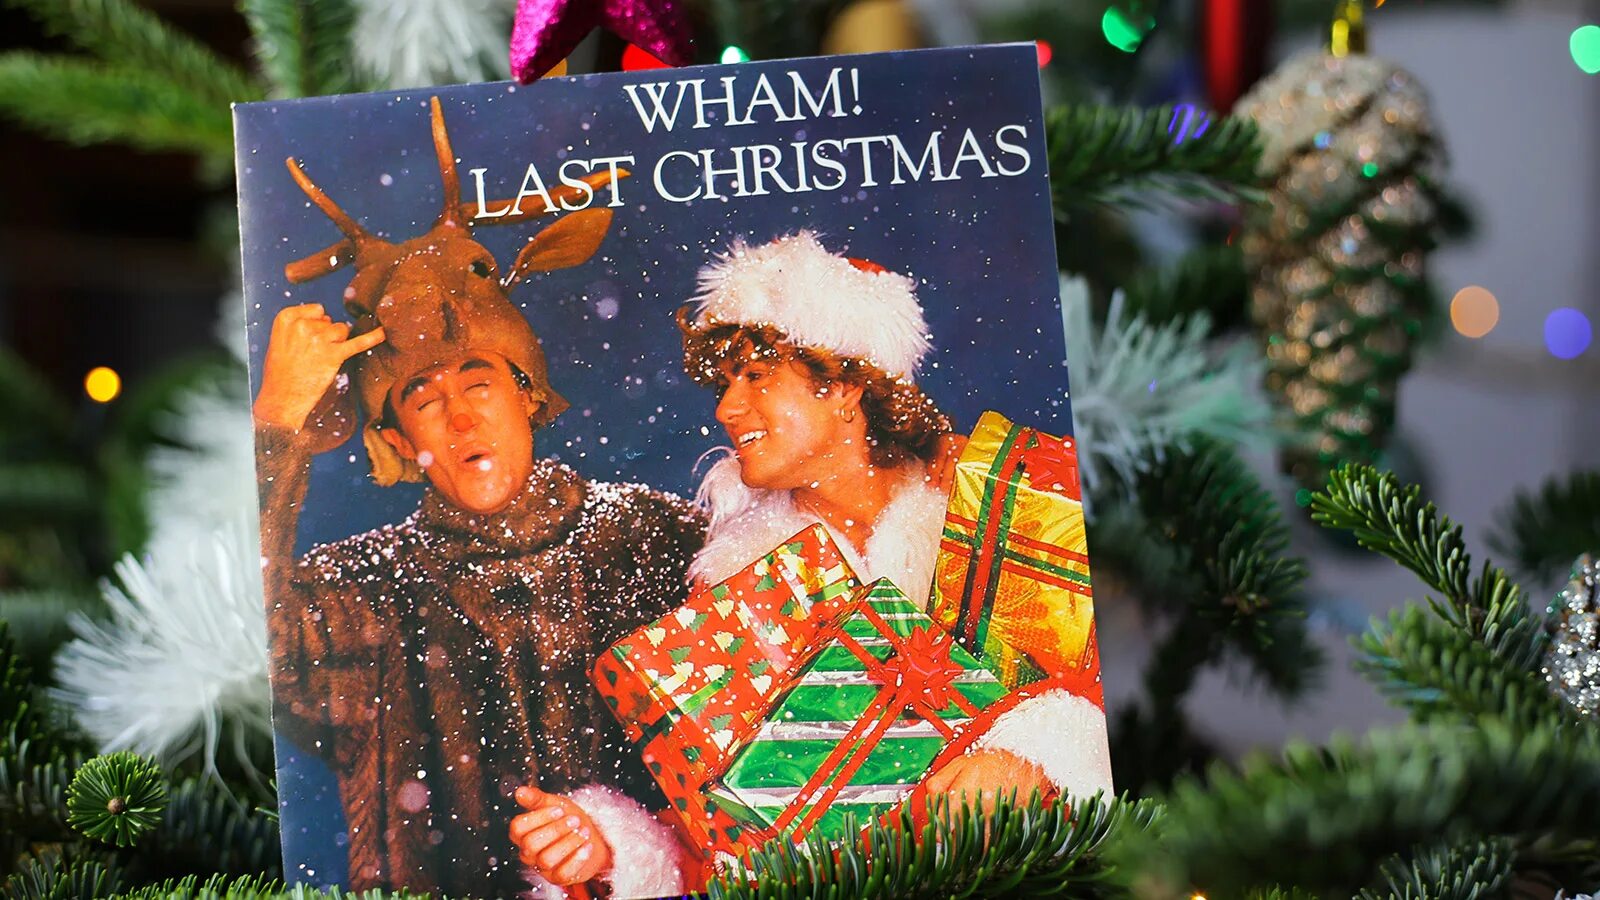 Май кристмас ласт кристмас. Ласт Кристмас. Wham last Christmas. Last Christmas обложка. Last Christmas картинки.